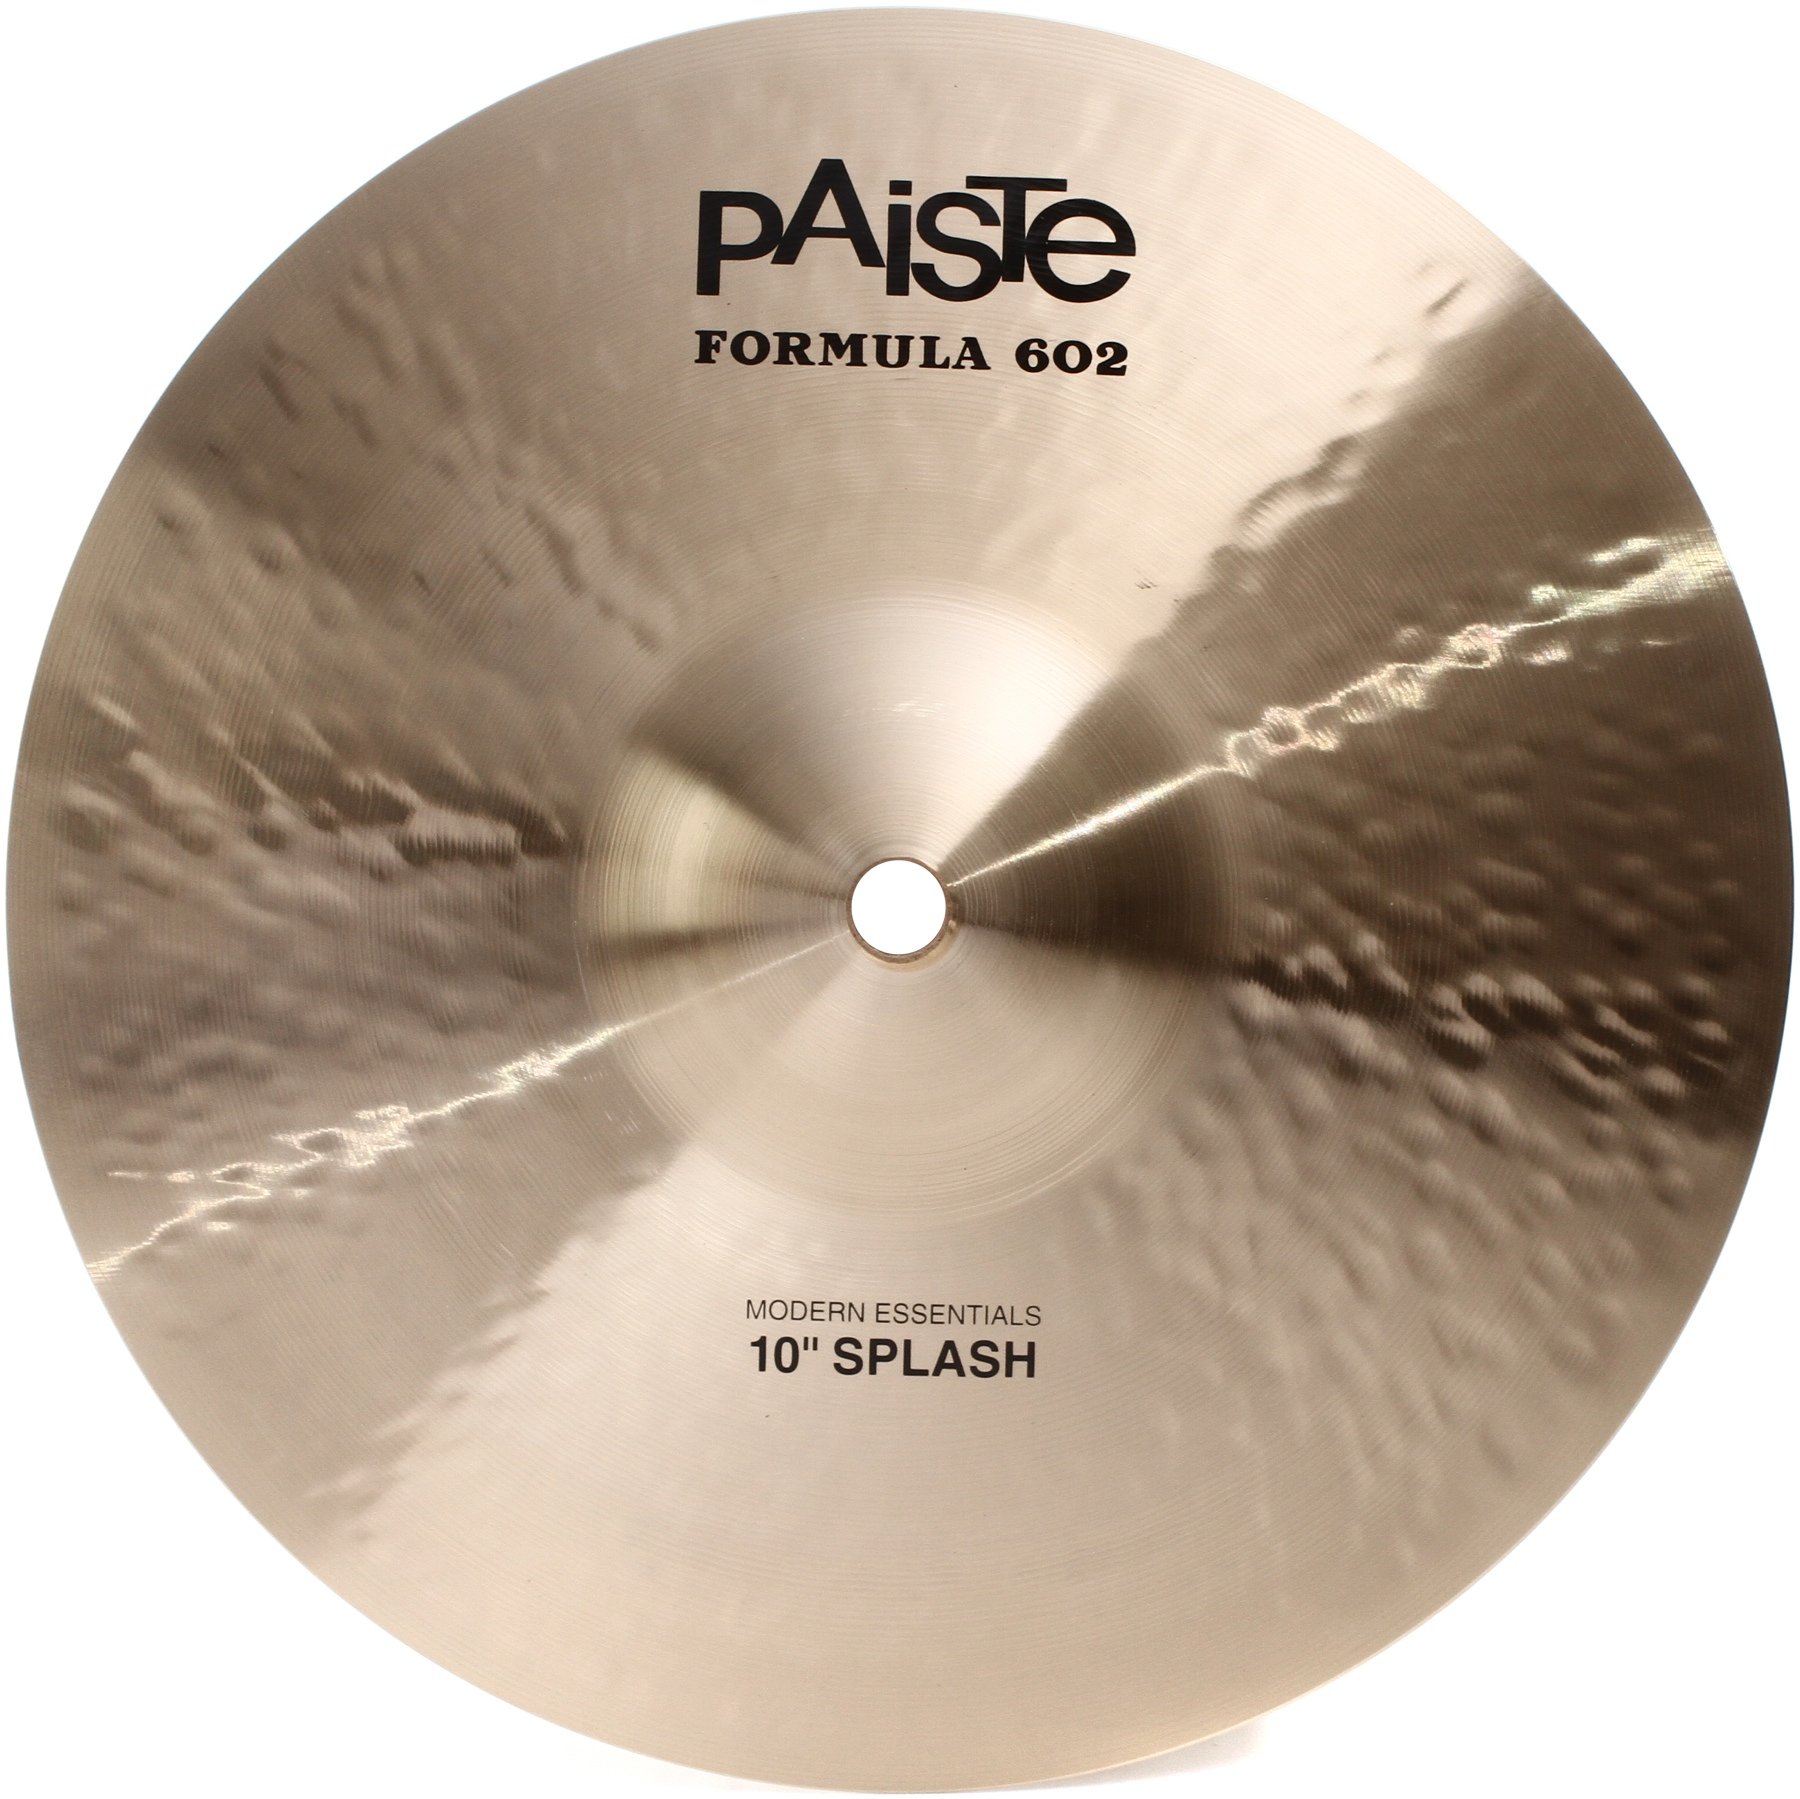 Paiste 10 inch Formula 602 Modern Essentials Splash Cymbal 